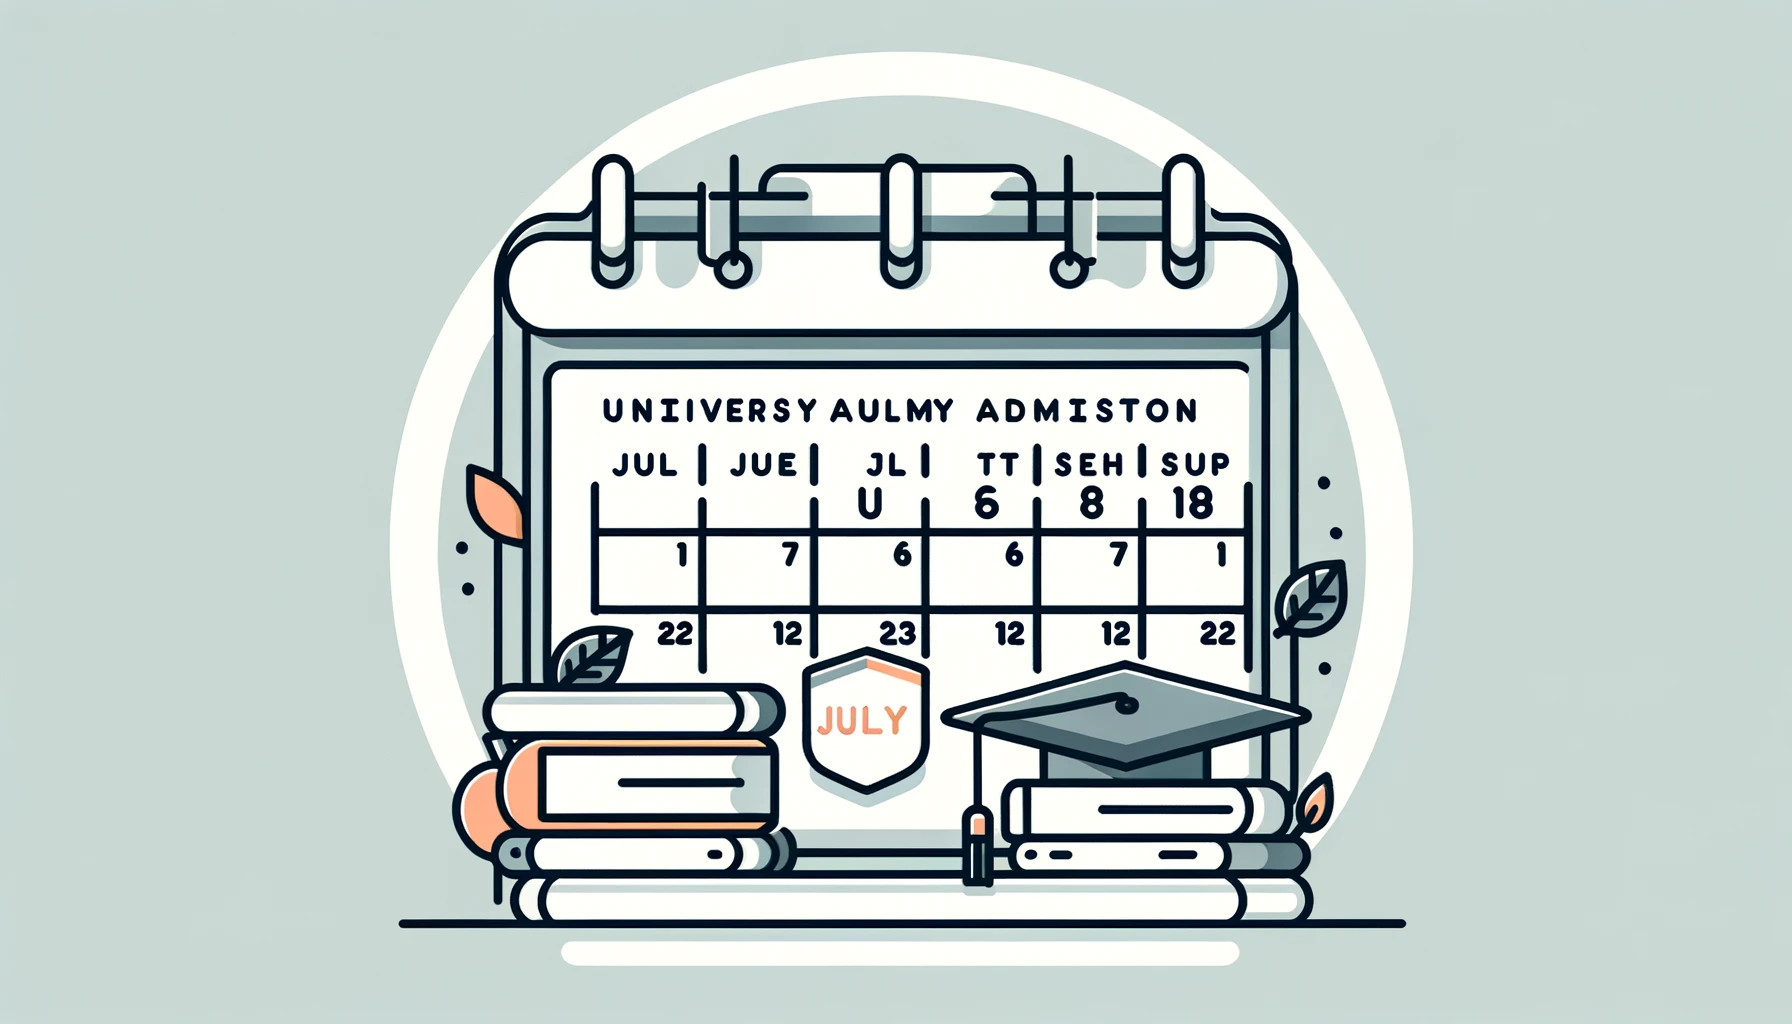 Kalender över viktiga datum för framtida studenter